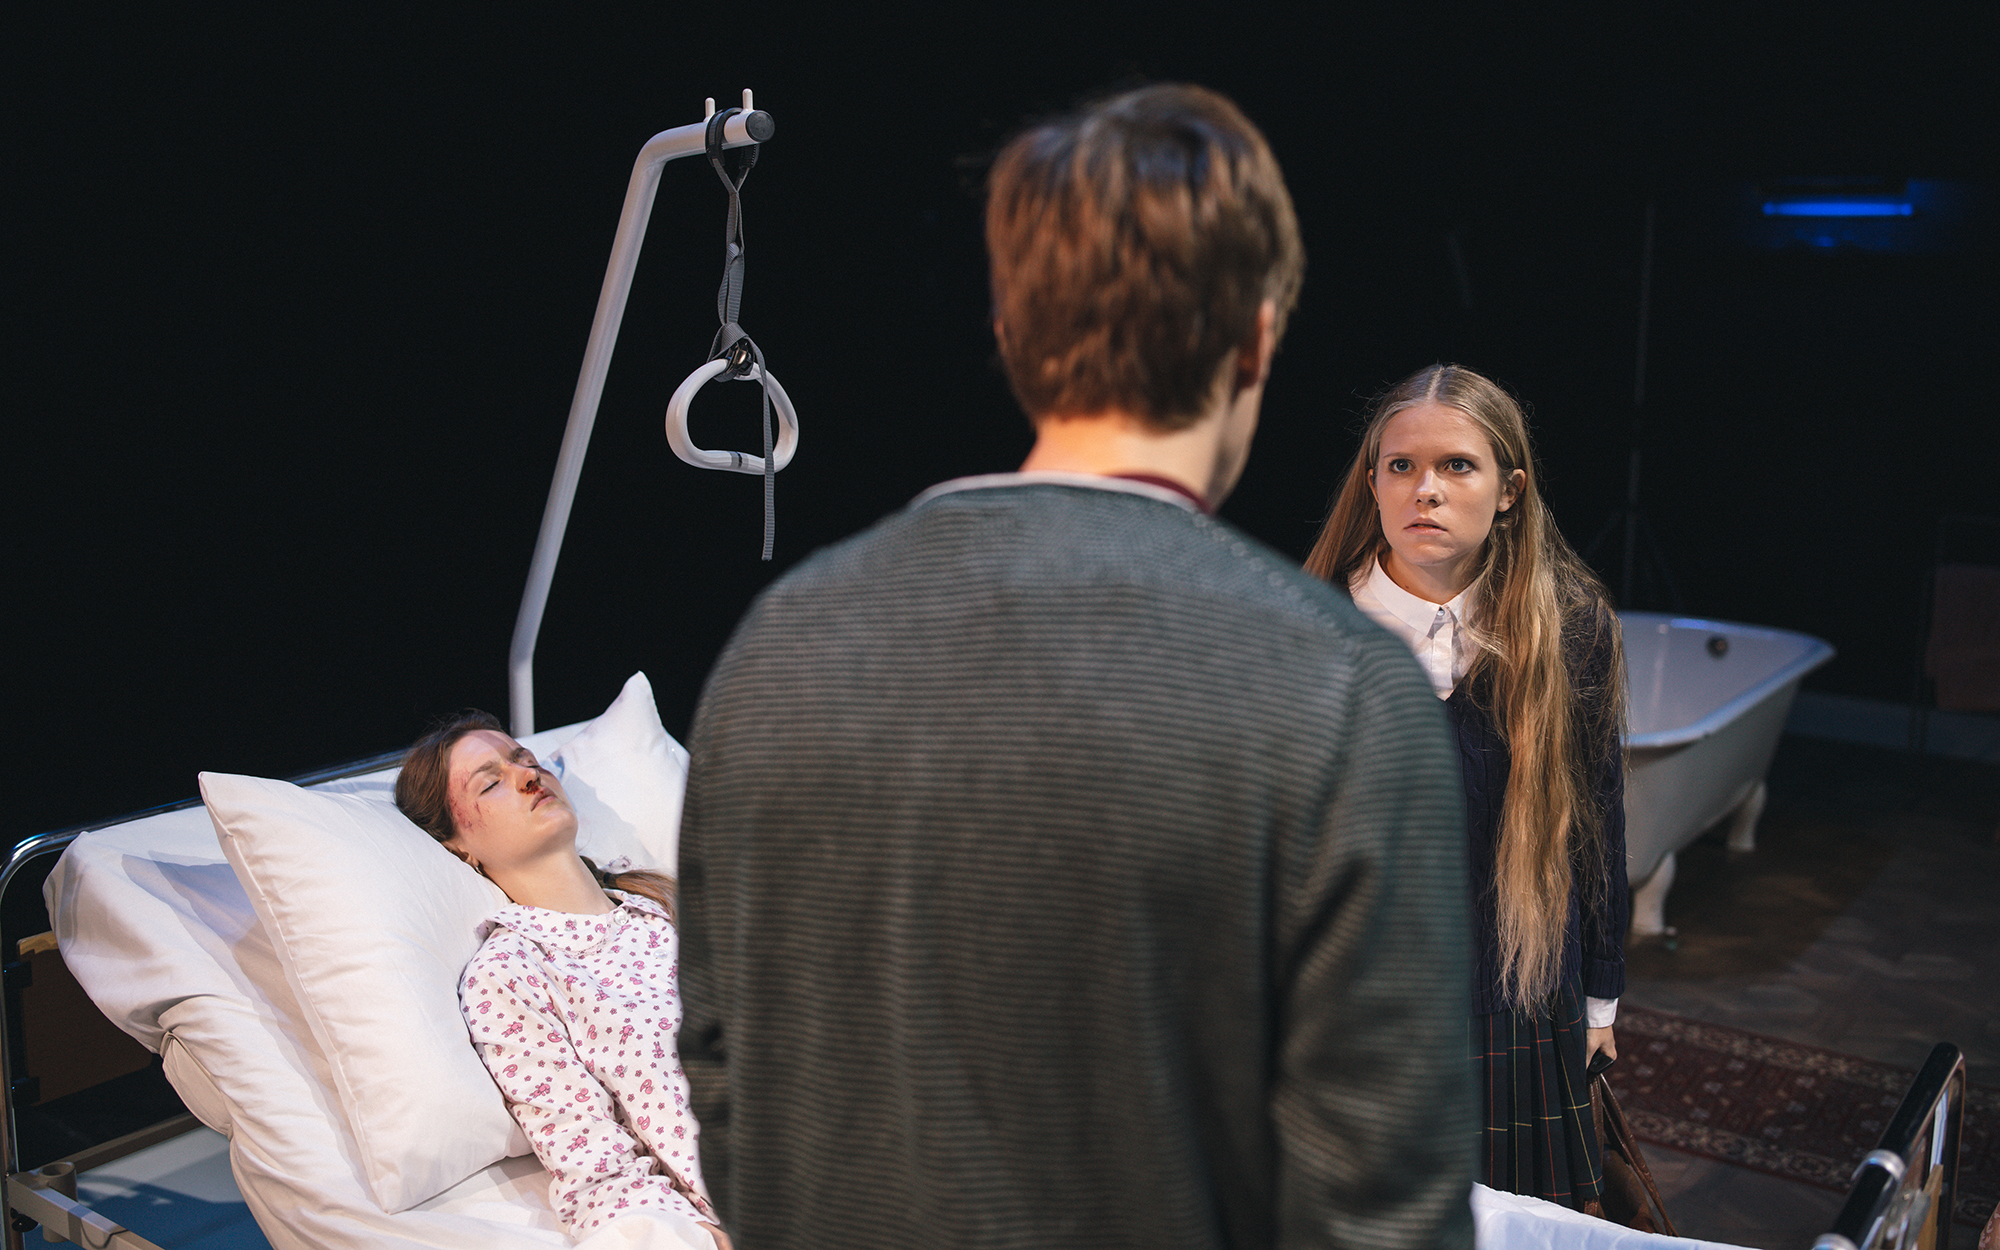 Alice (Lucija Harum) leži na bolniški postelji z zaprtimi očmi in podplutbami na obrazu. Henry (Matej Zemljič) in Mia (Ana Pavlin) stojita vsak na eni strani postelje in se gledata. Avtor fotografije: Peter Giodani.